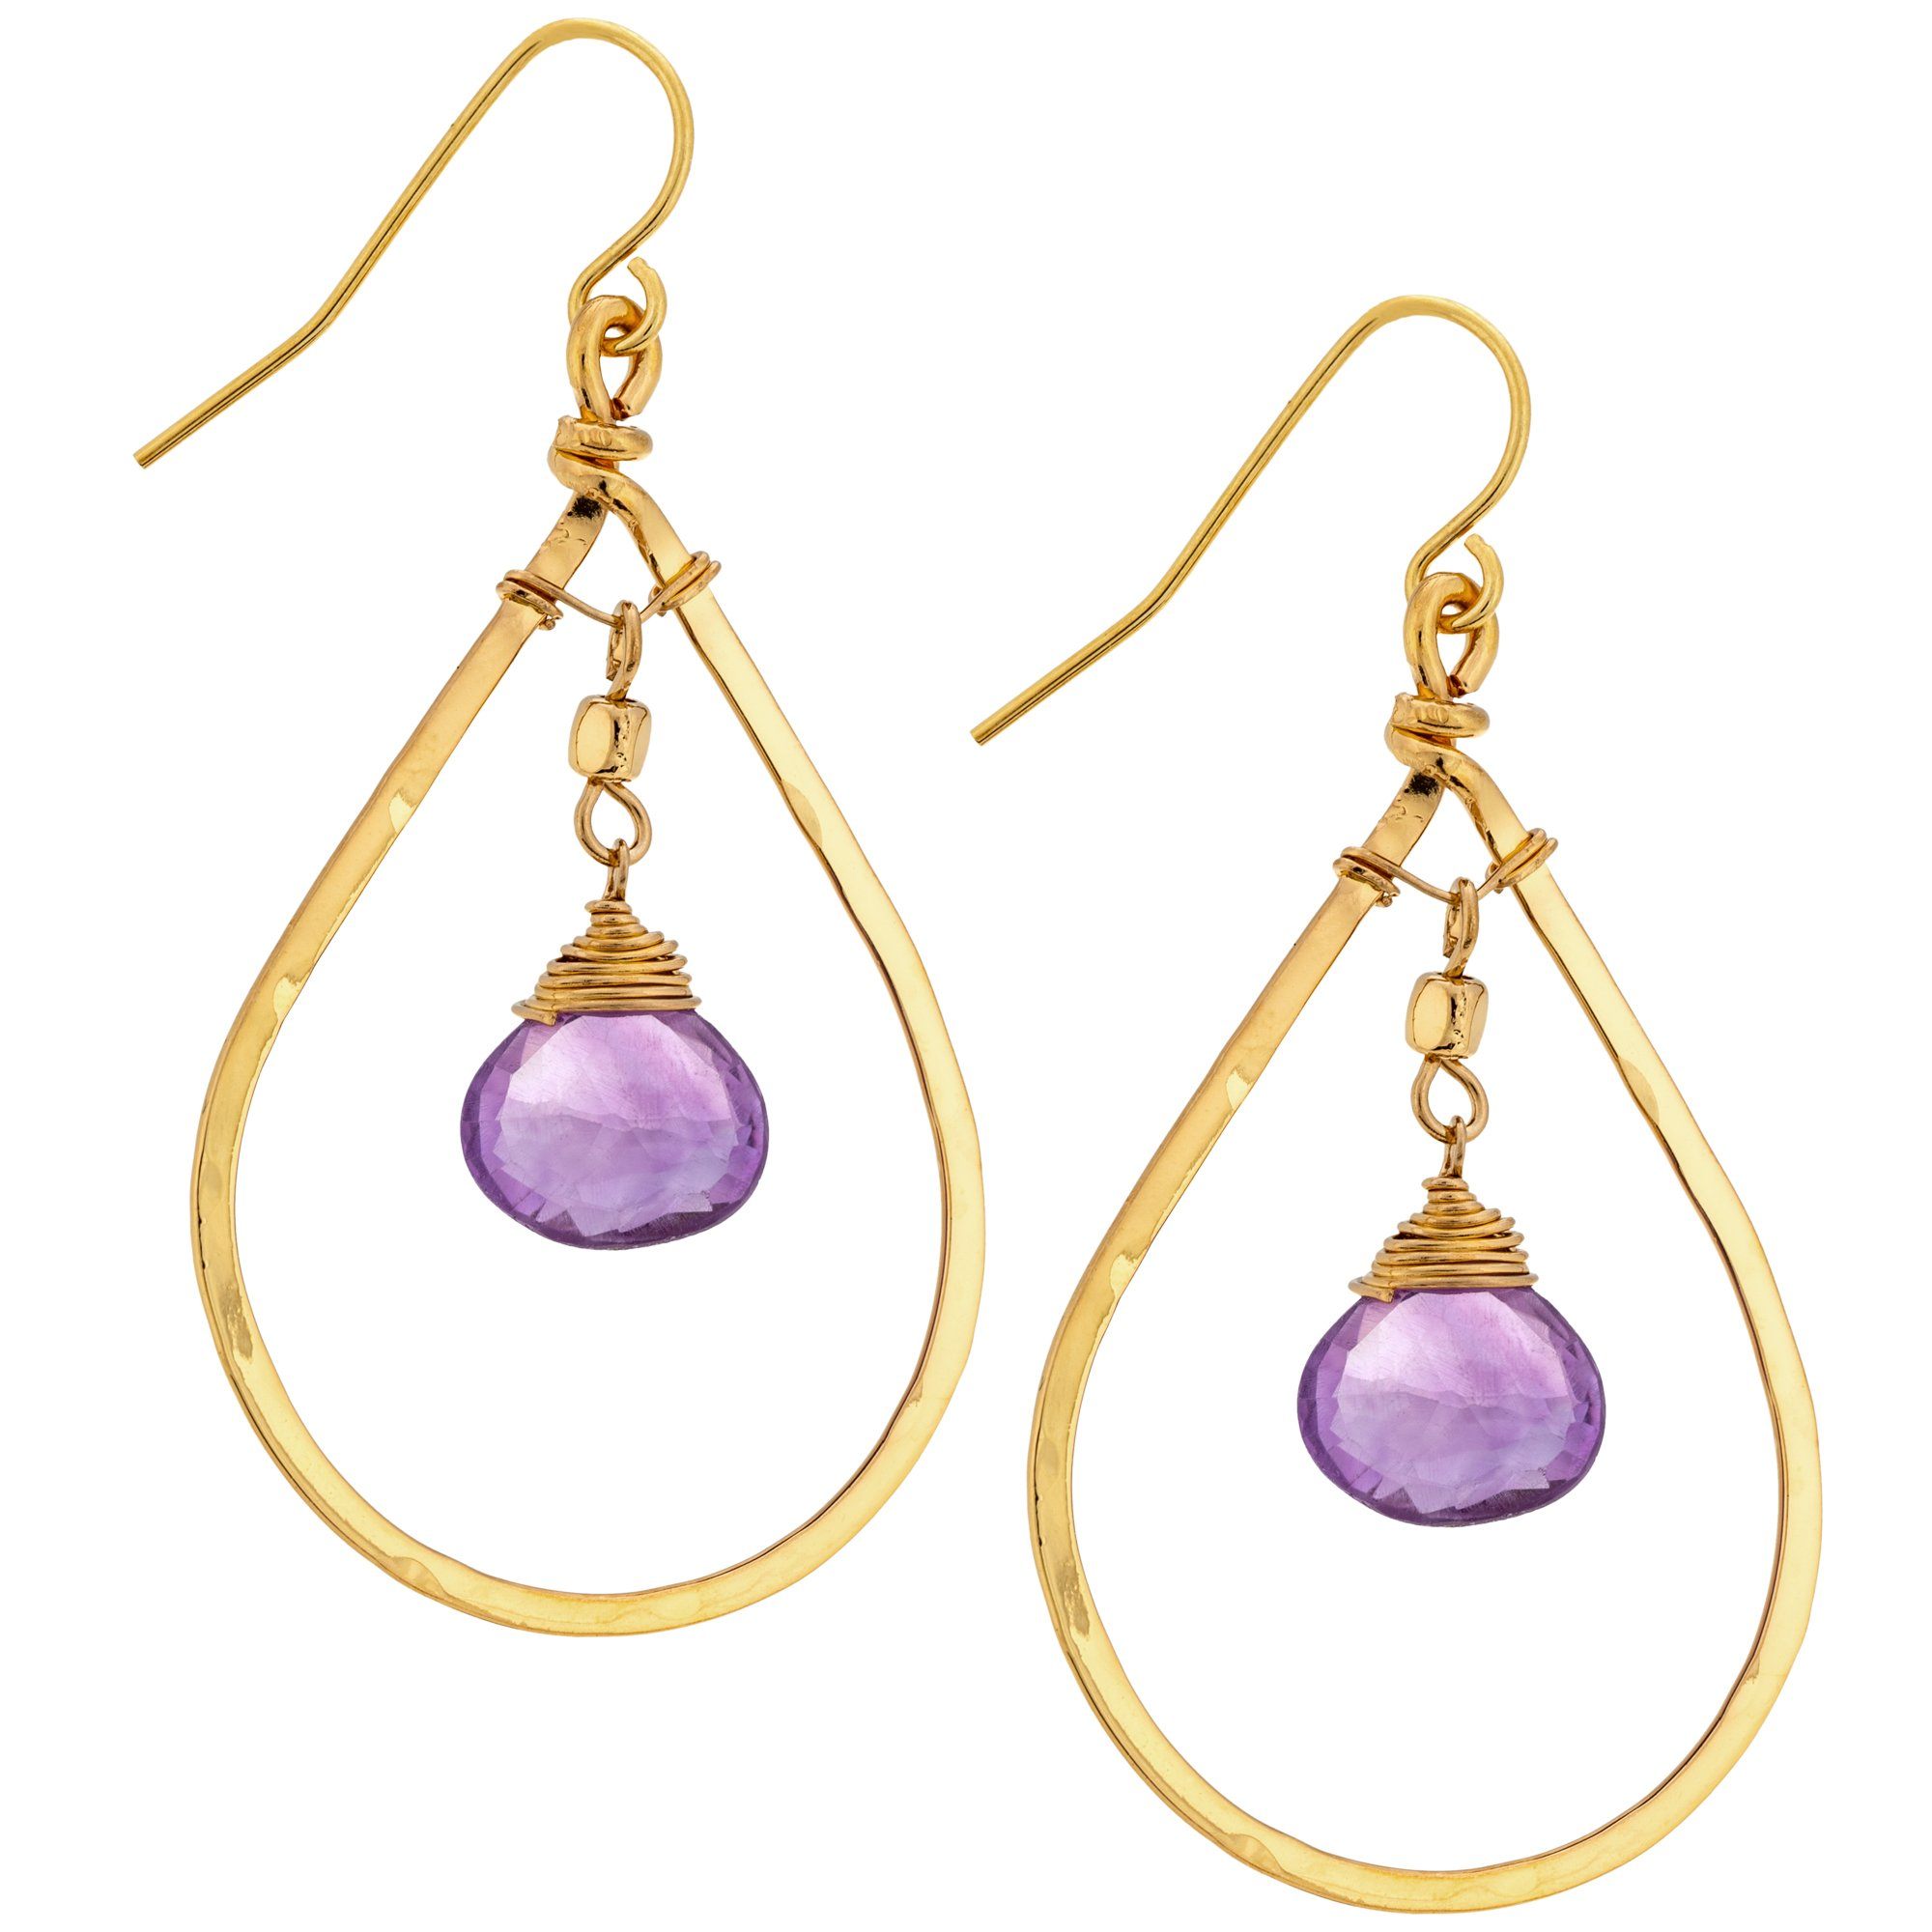 Gemstone Hoop Gold-Filled Earrings - Amethyst